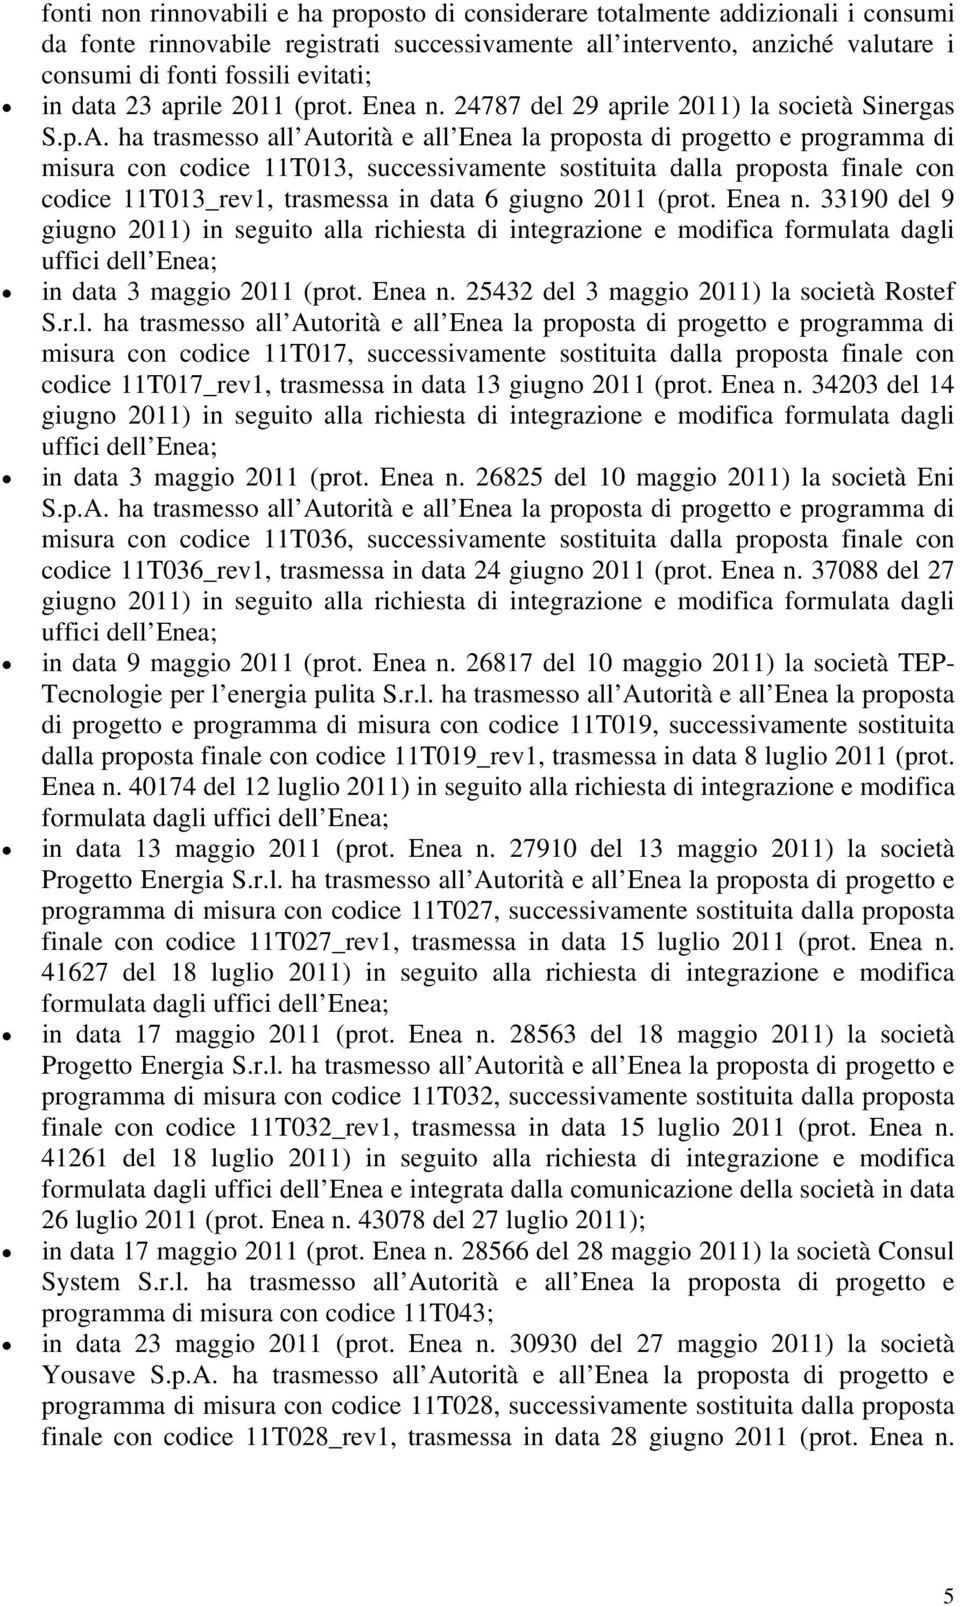 24787 del 29 aprile 2011) la società Sinergas misura con codice 11T013, successivamente sostituita dalla proposta finale con codice 11T013_rev1, trasmessa in data 6 giugno 2011 (prot. Enea n.